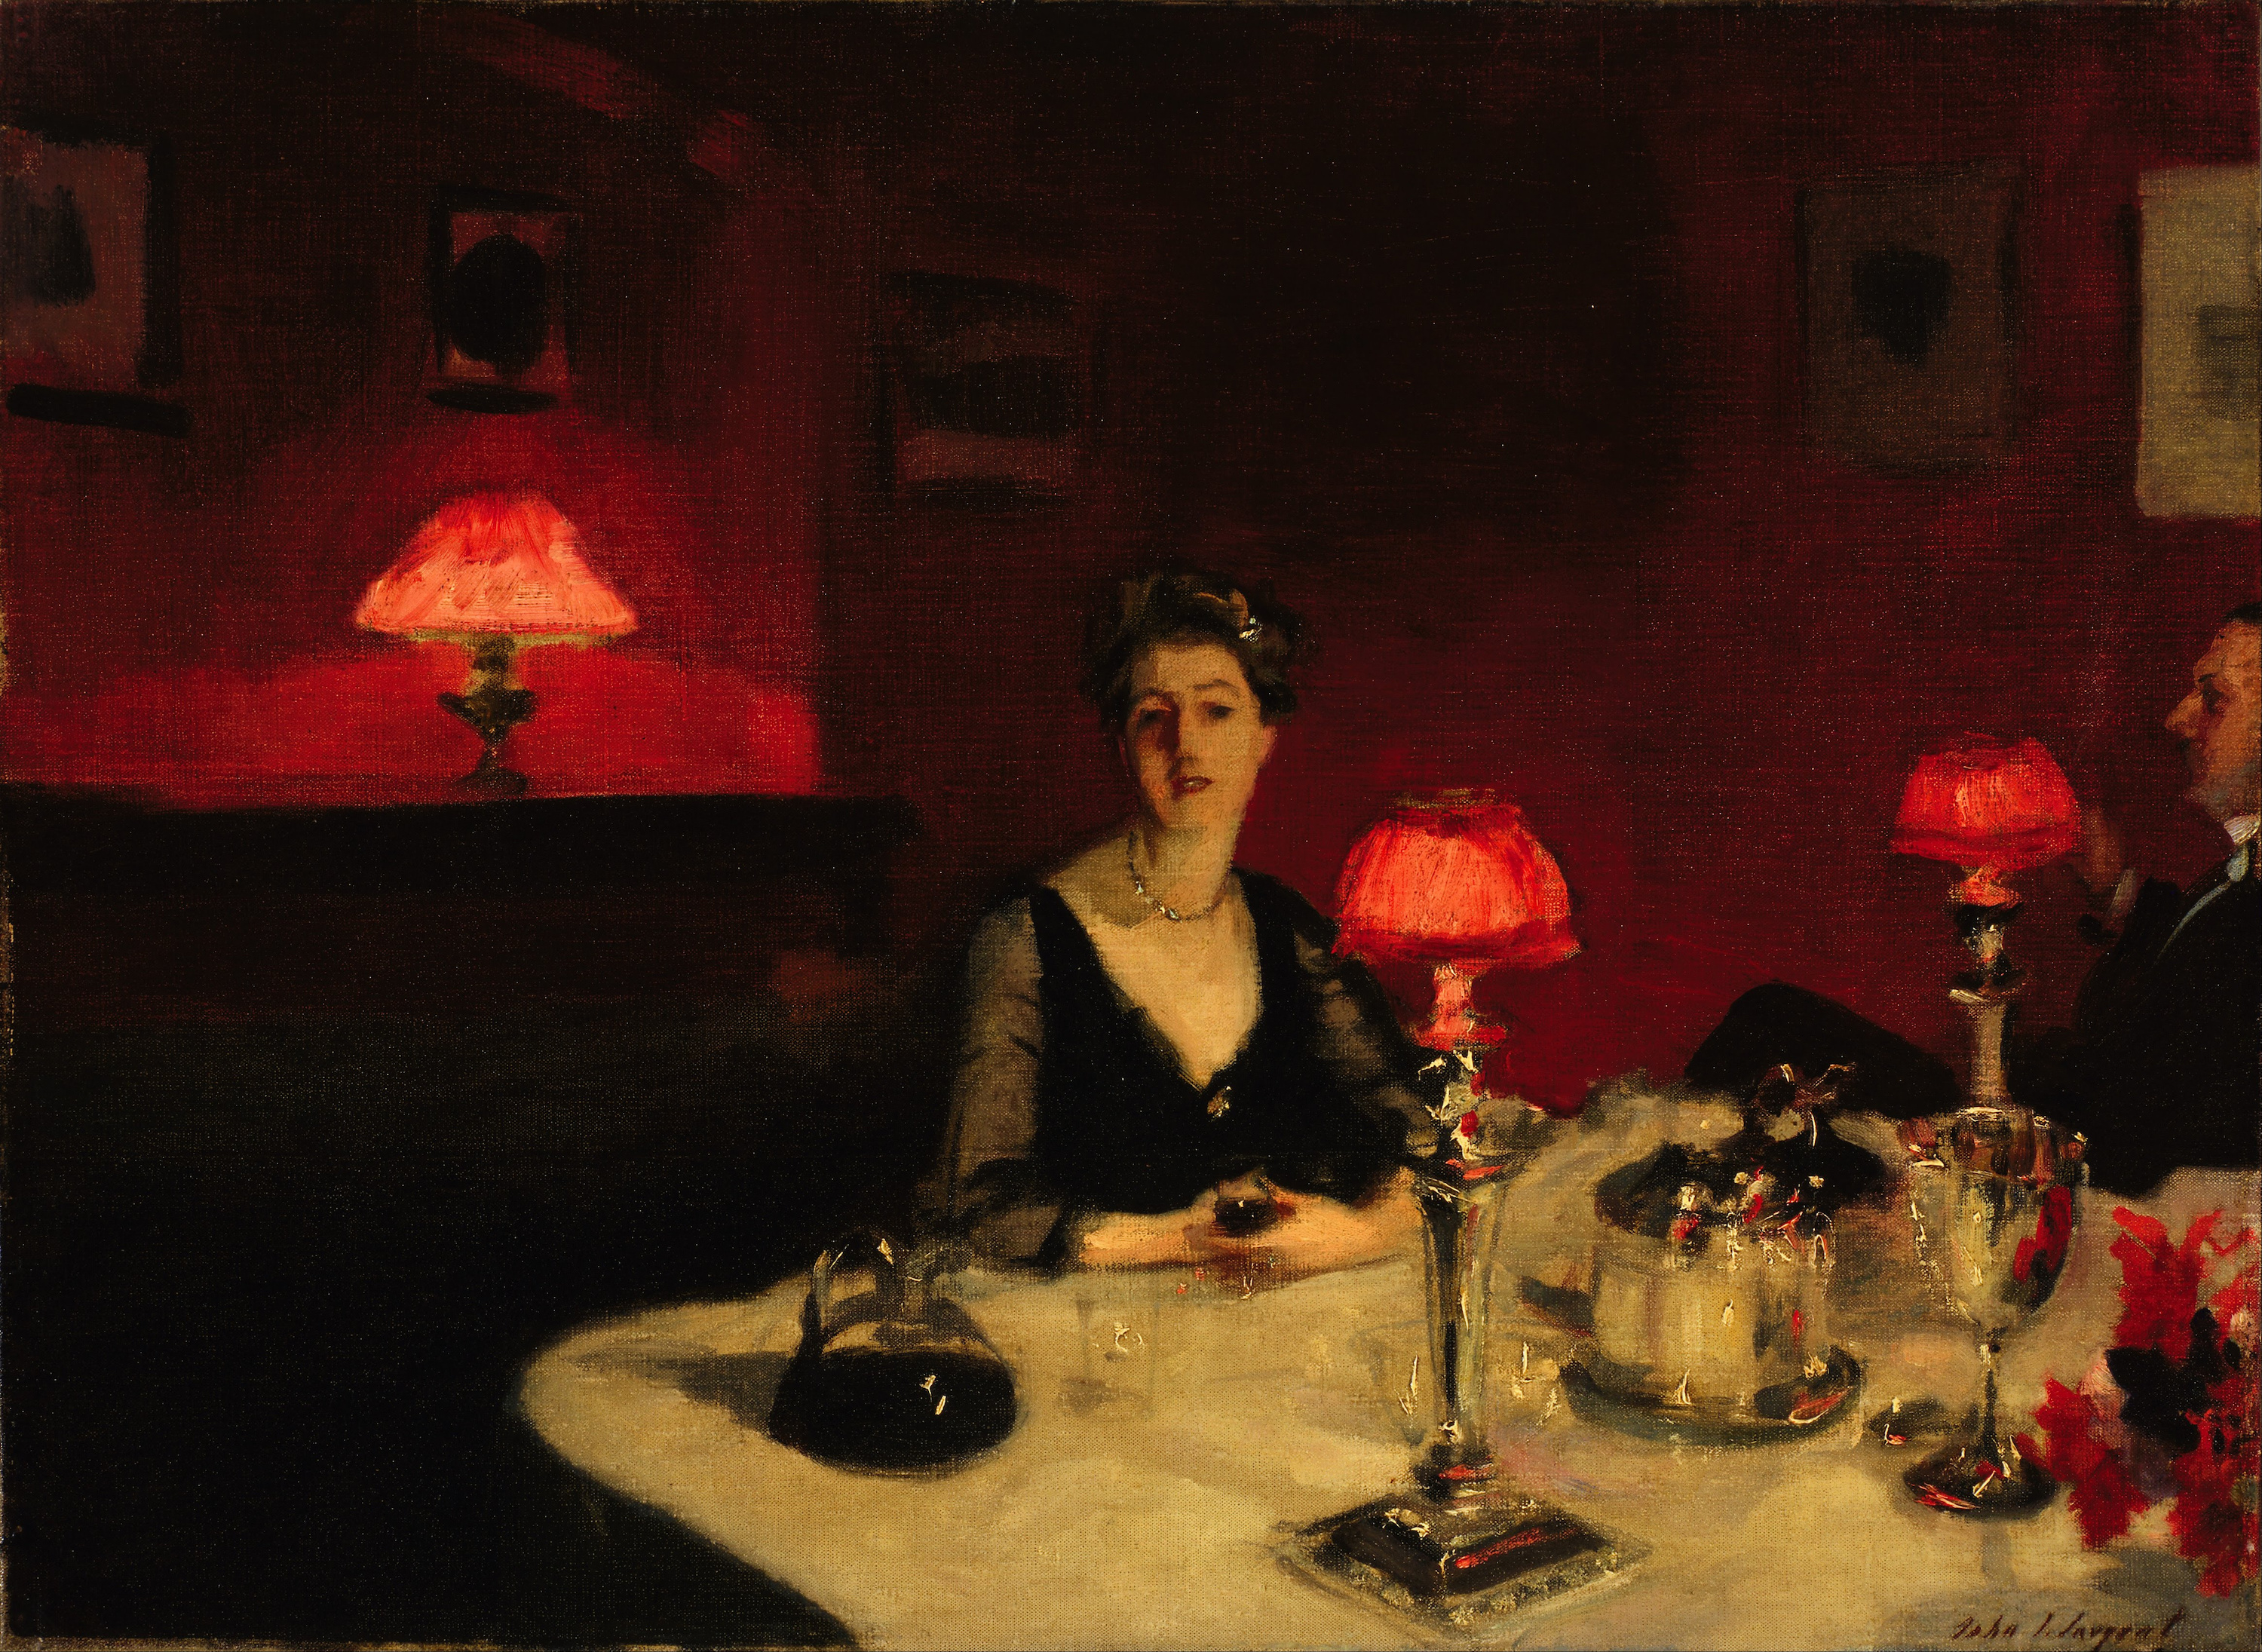 (كأس بورطو (طاولة العشاء في الليل by John Singer Sargent - 1884م - 51.4 x 66.7 cm 